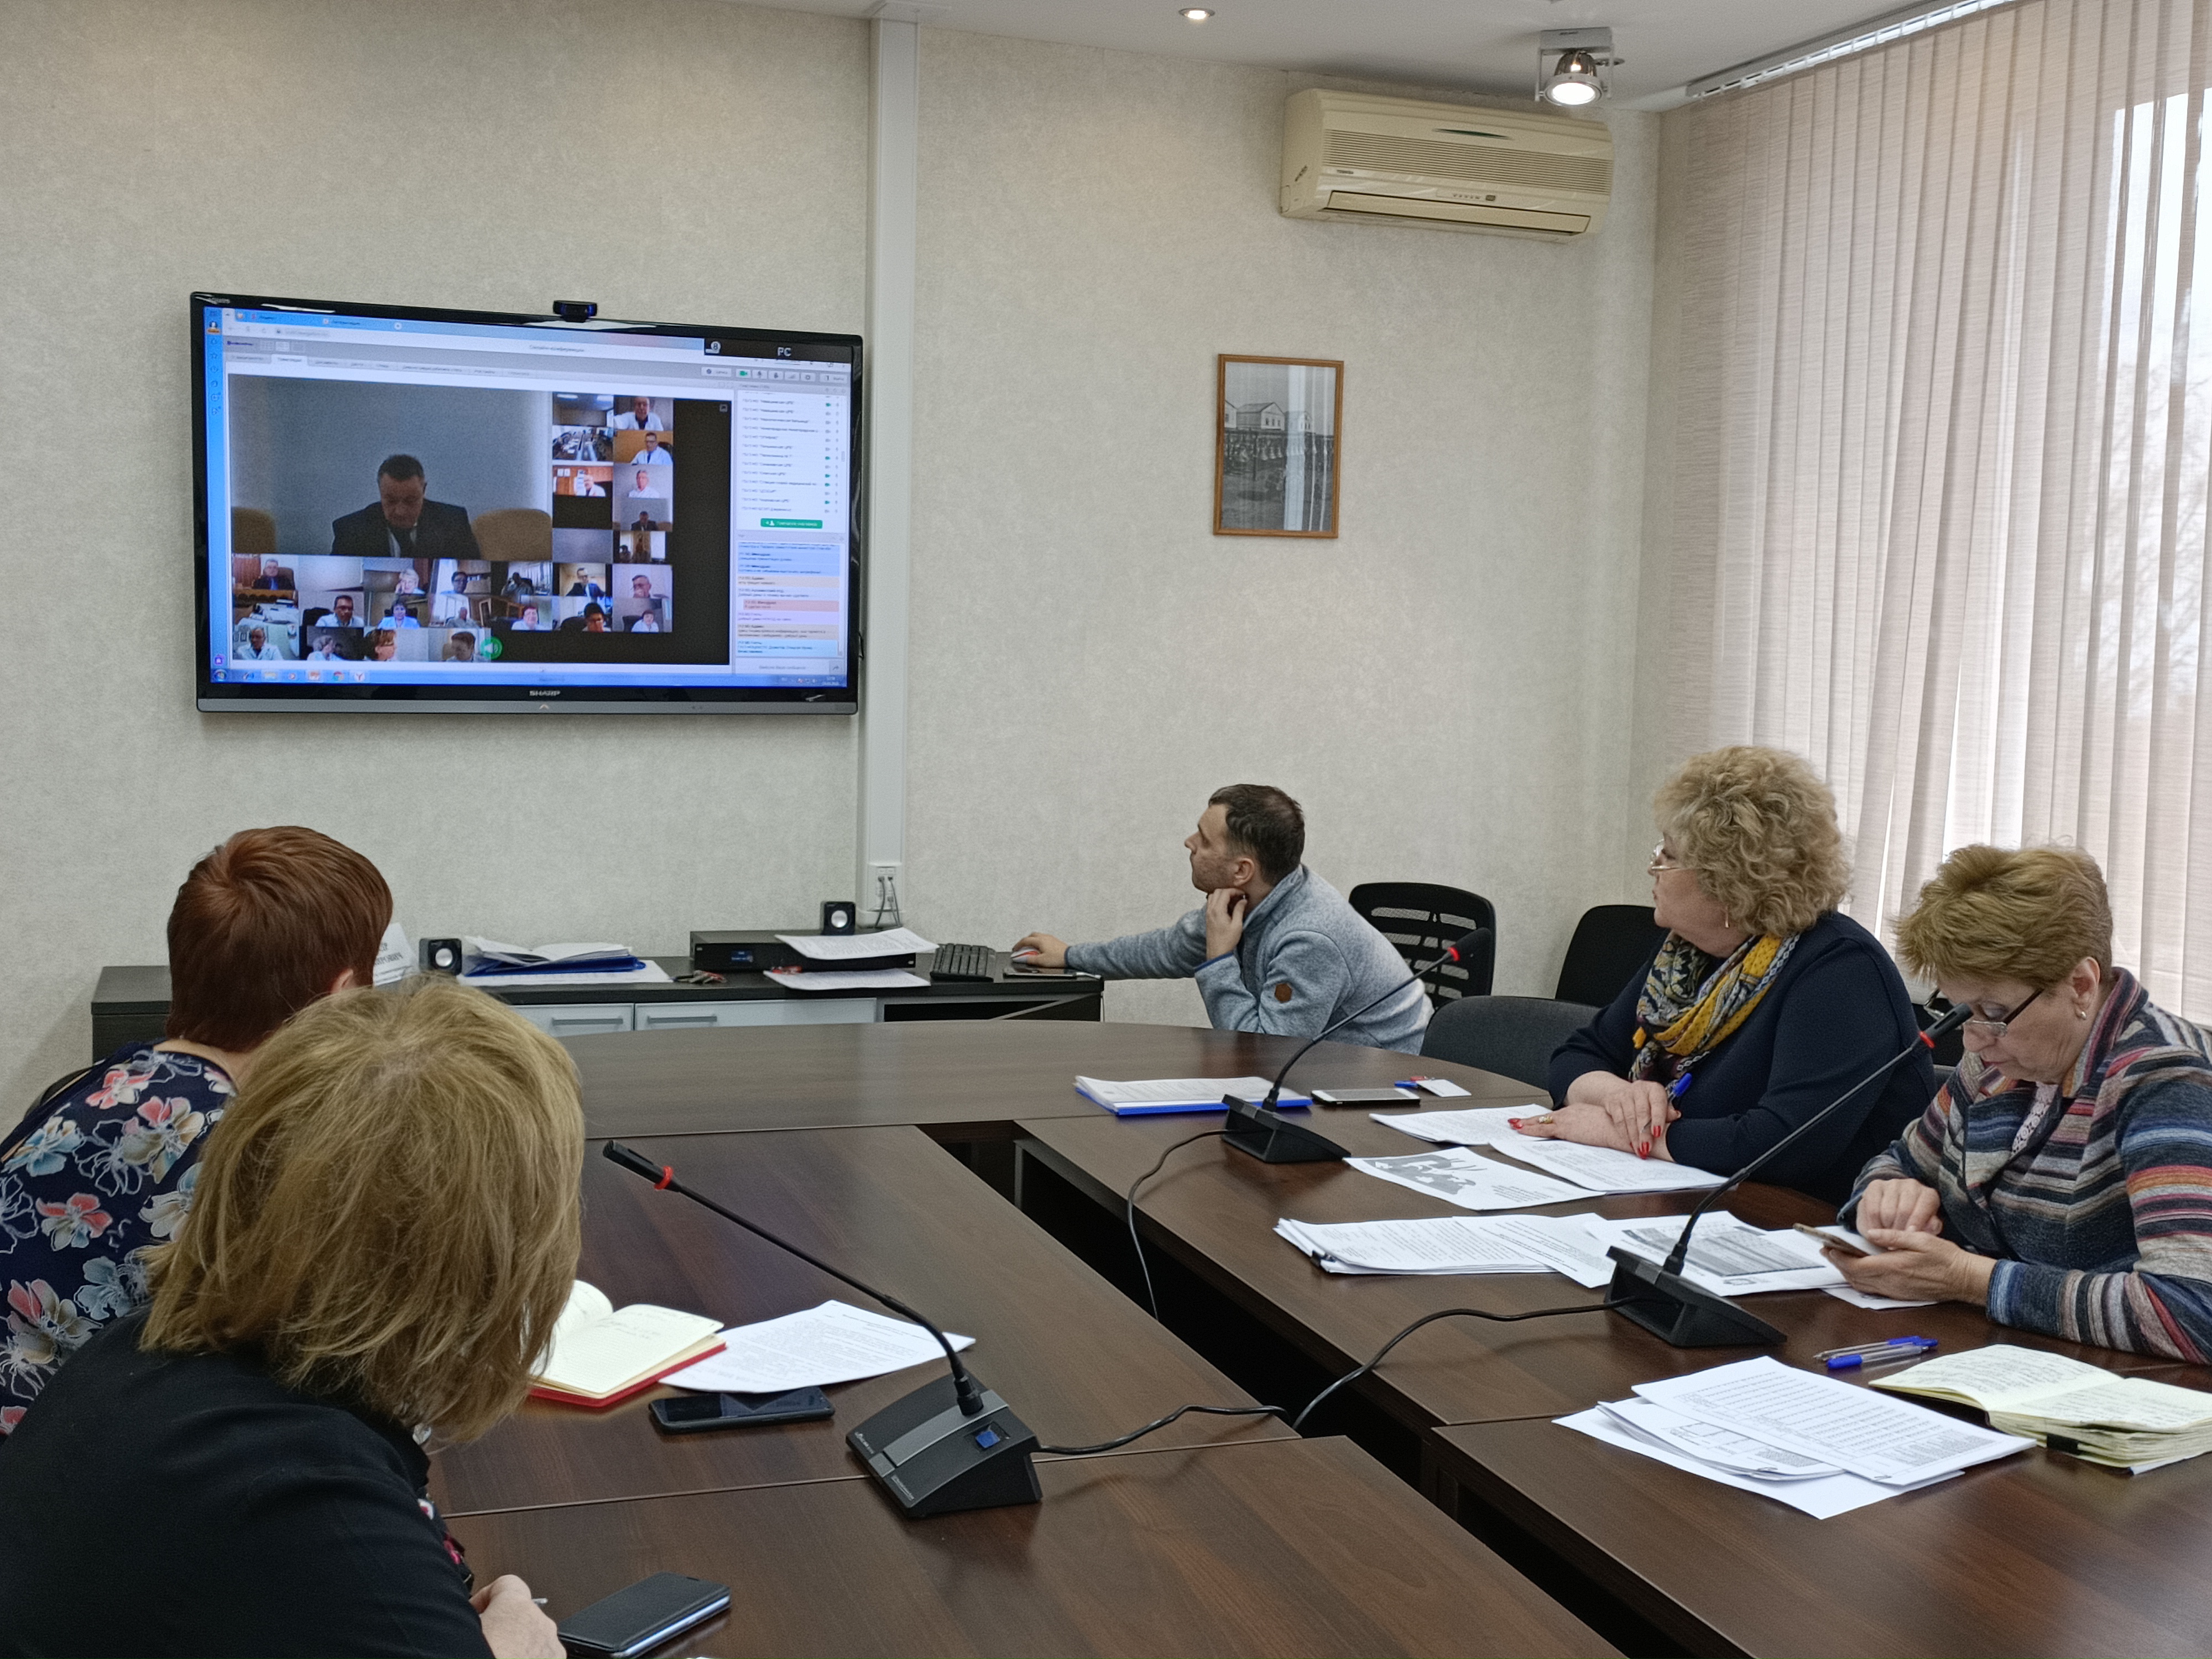 Министр здравоохранения Нижегородской области Александр Смирнов провел видеосекторное совещание на тему заболеваемости и мерах противодействия распространению коронавируса на территории Нижегородской области